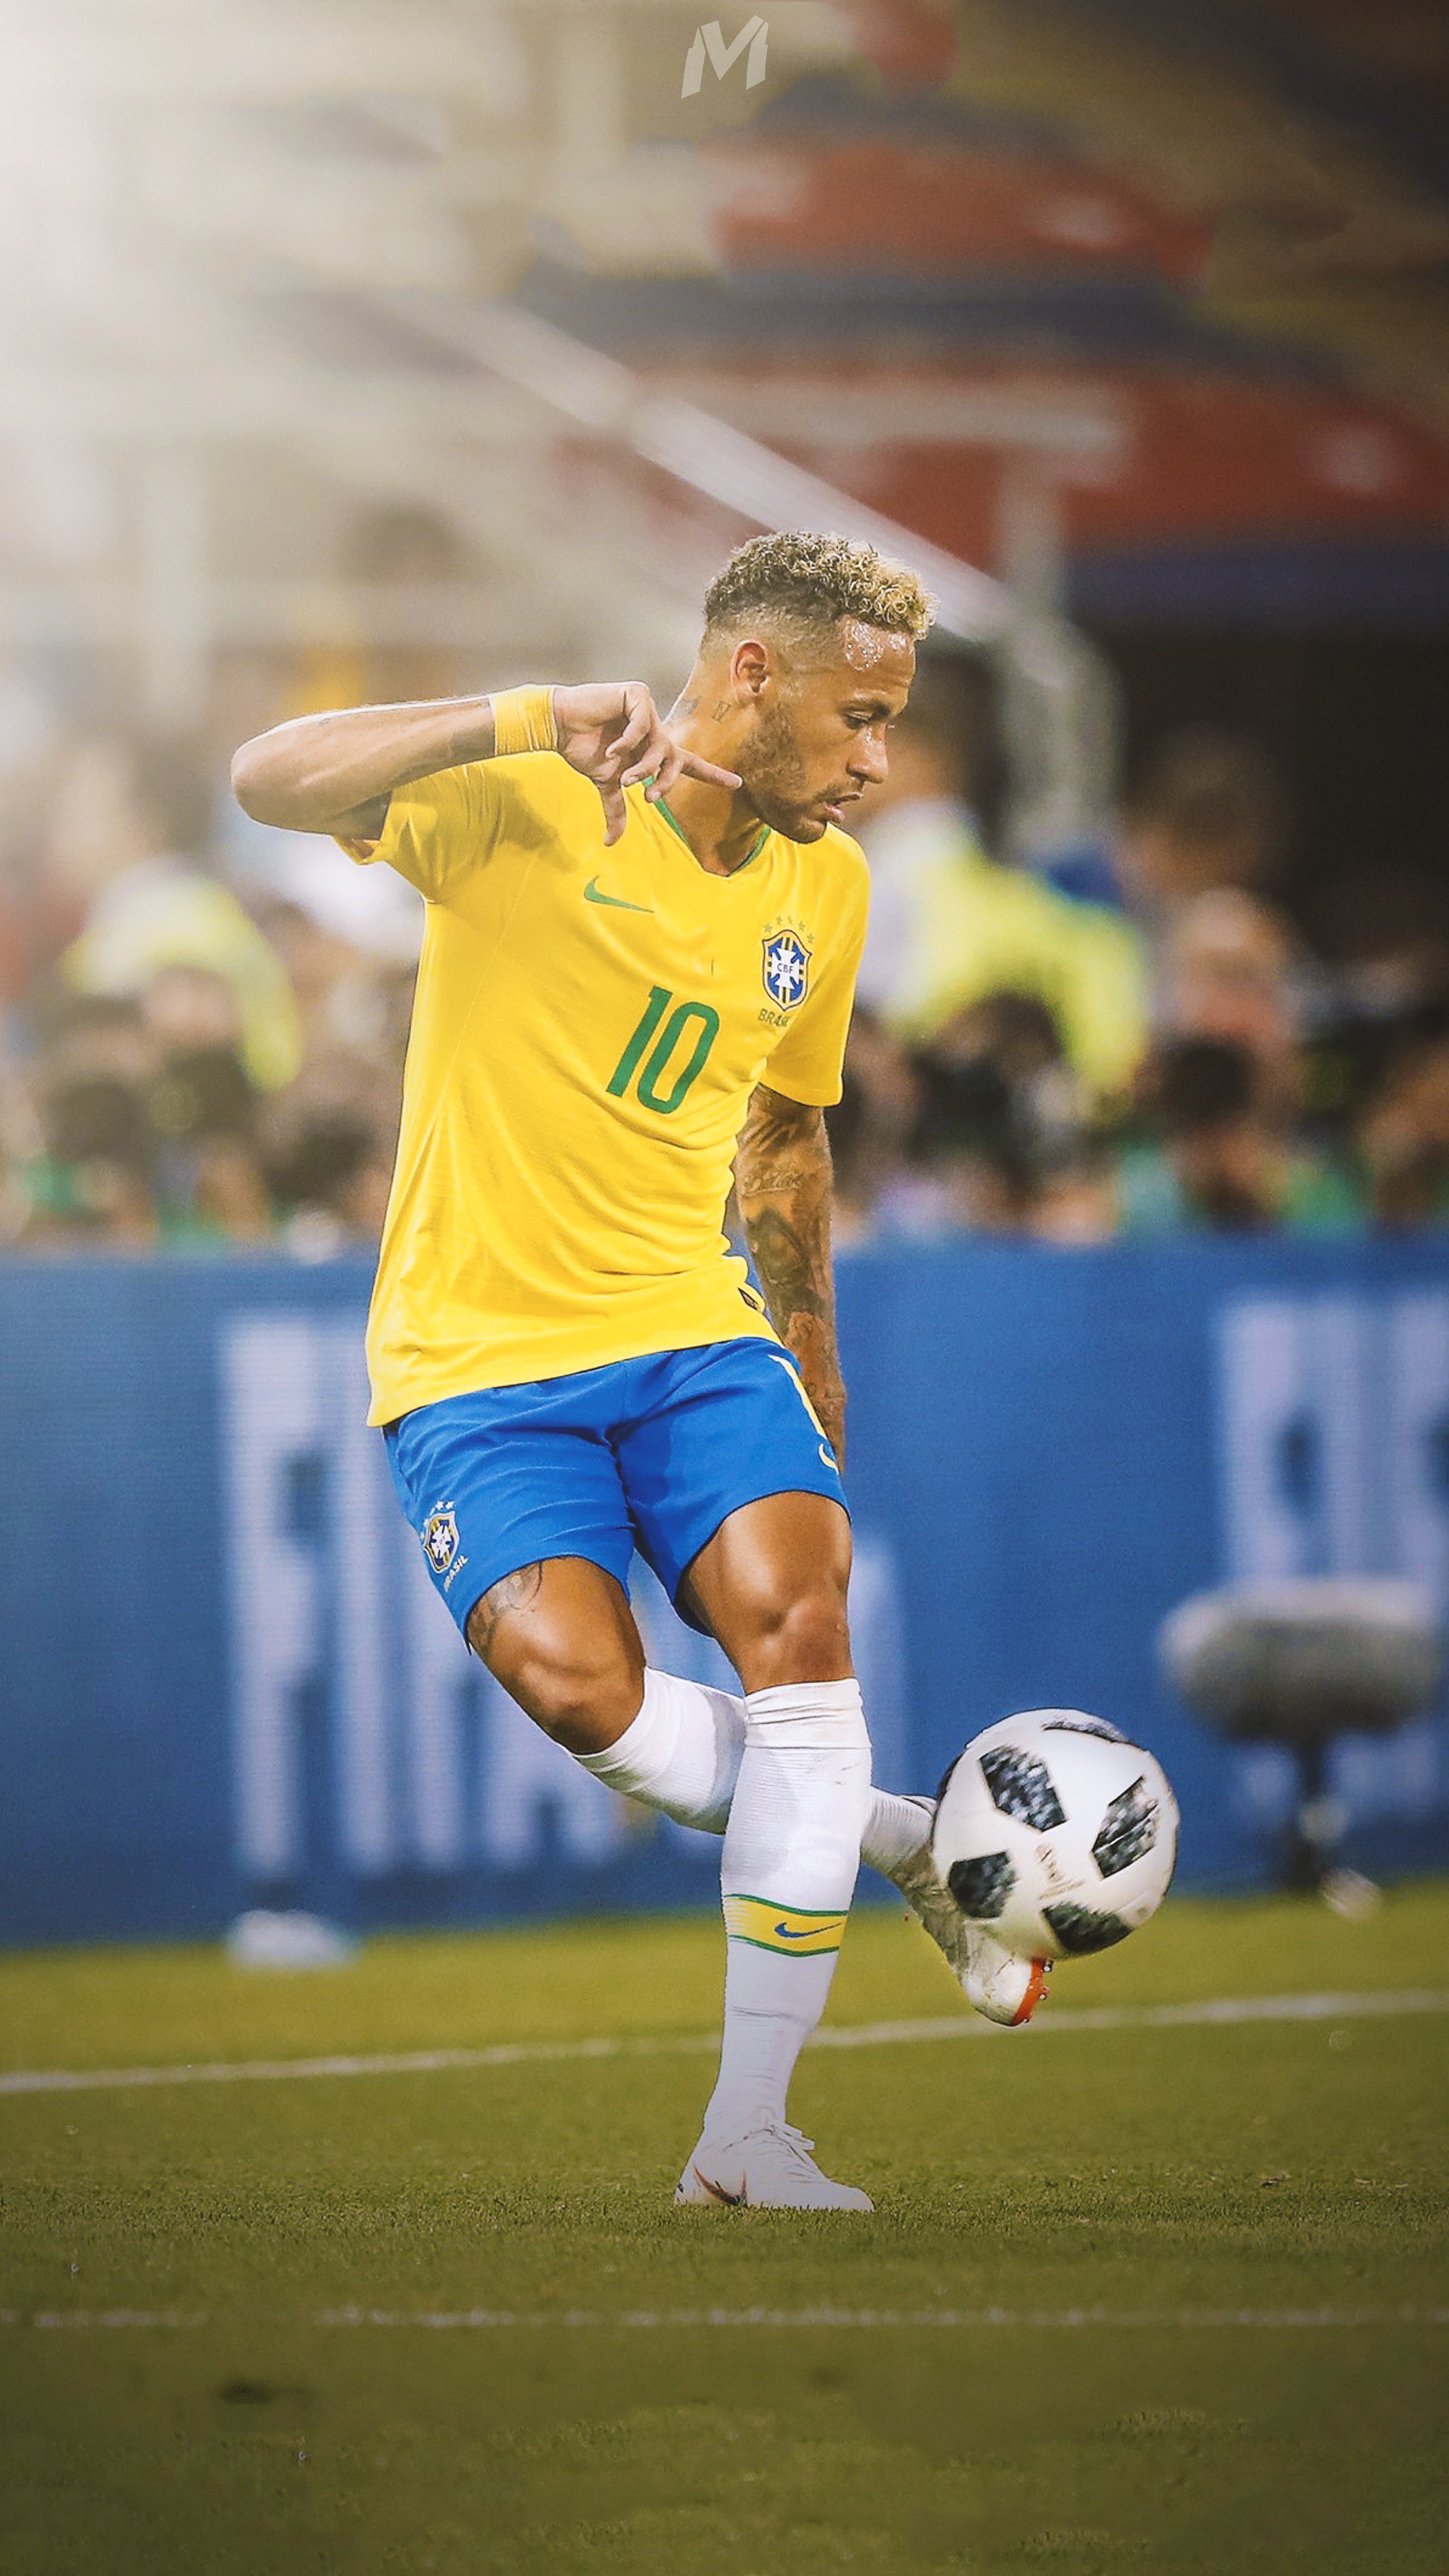 Tải Ngay BST Ảnh Neymar Đẹp Trai Cool Ngầu Làm Hình Nền  Top 10 Hà Nội